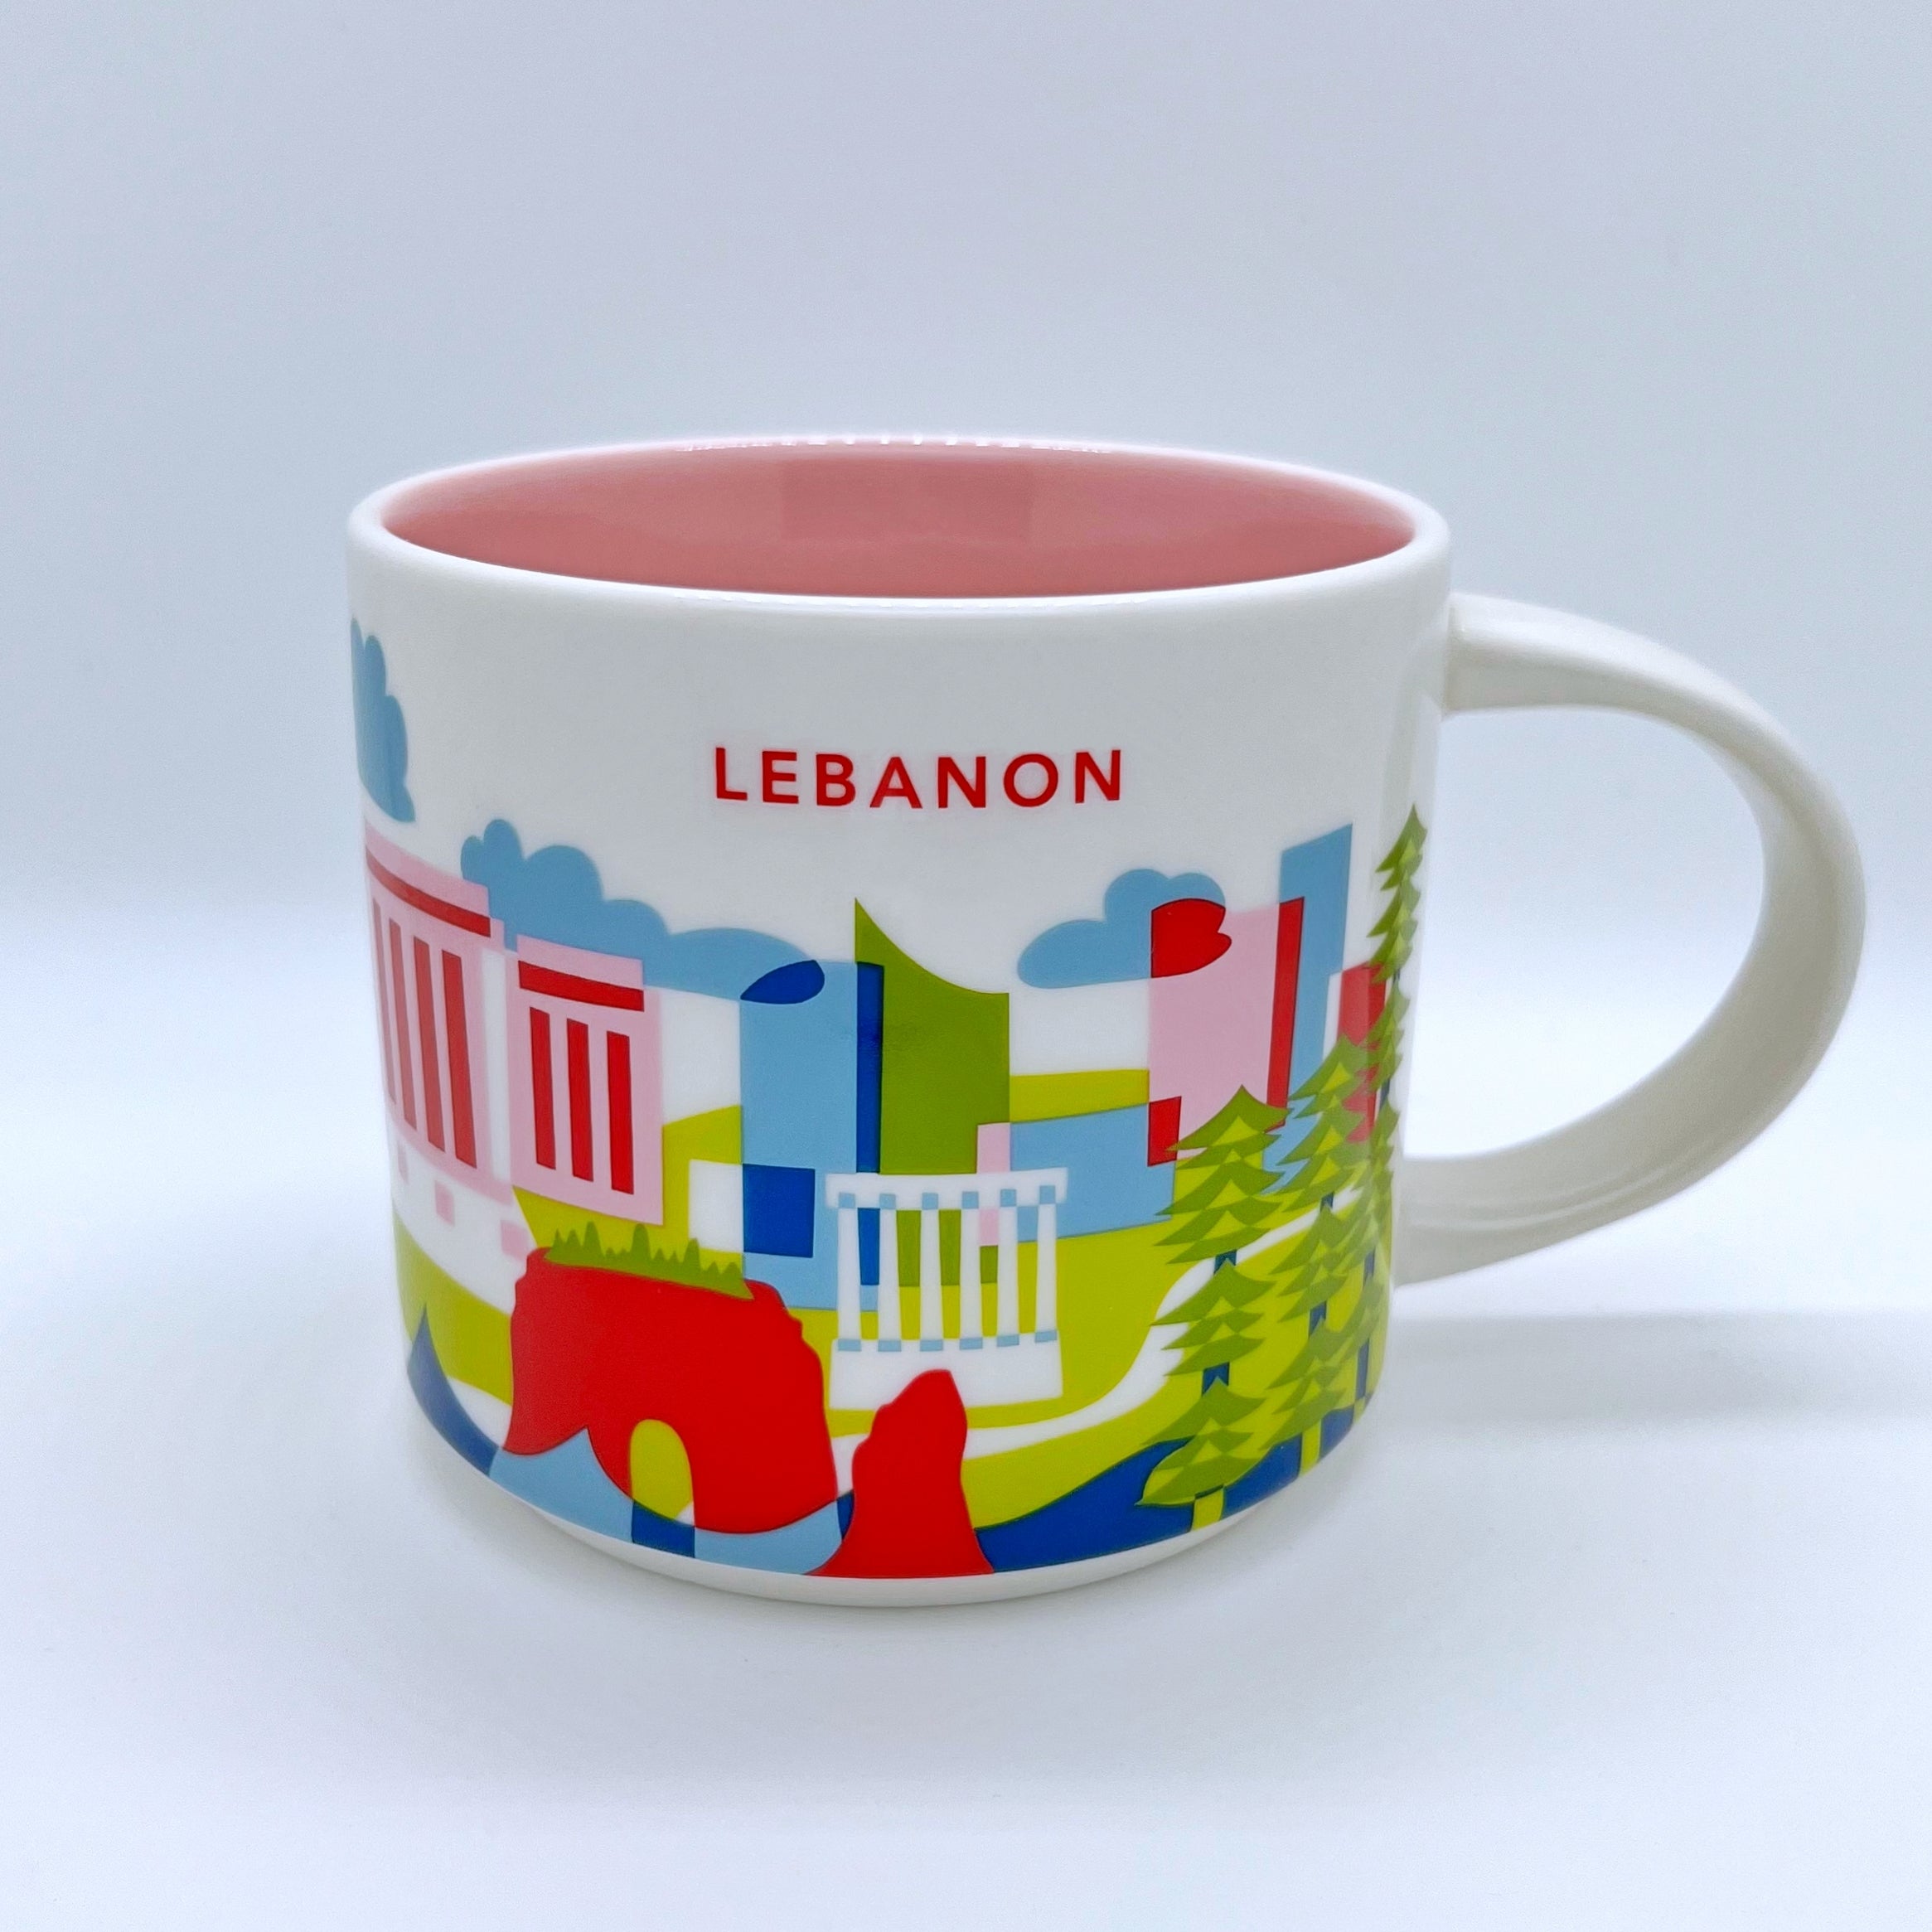 Kaffee Tee und Cappuccino Tasse von Starbucks mit gemalten Bildern aus der Stadt Lebanon